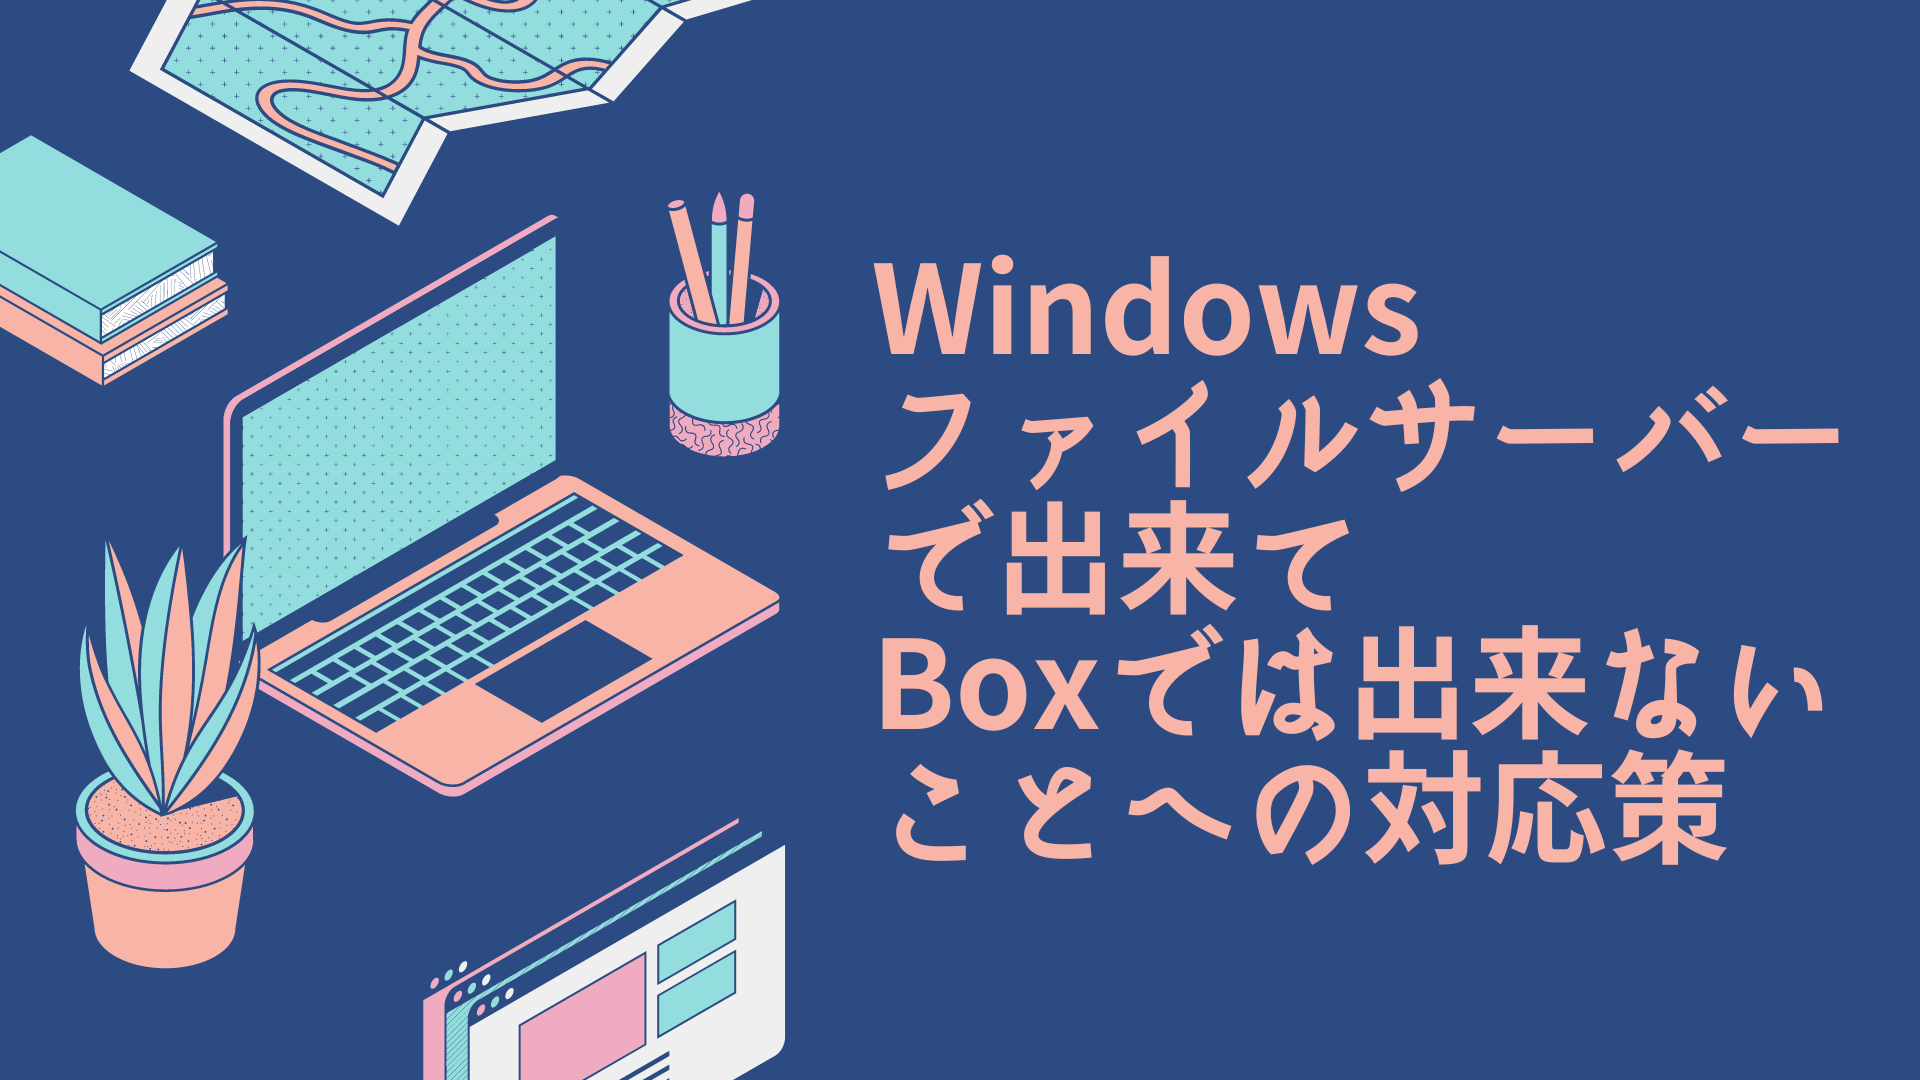 Windowsファイルサーバーで出来てBoxでは出来ないことへの対応策